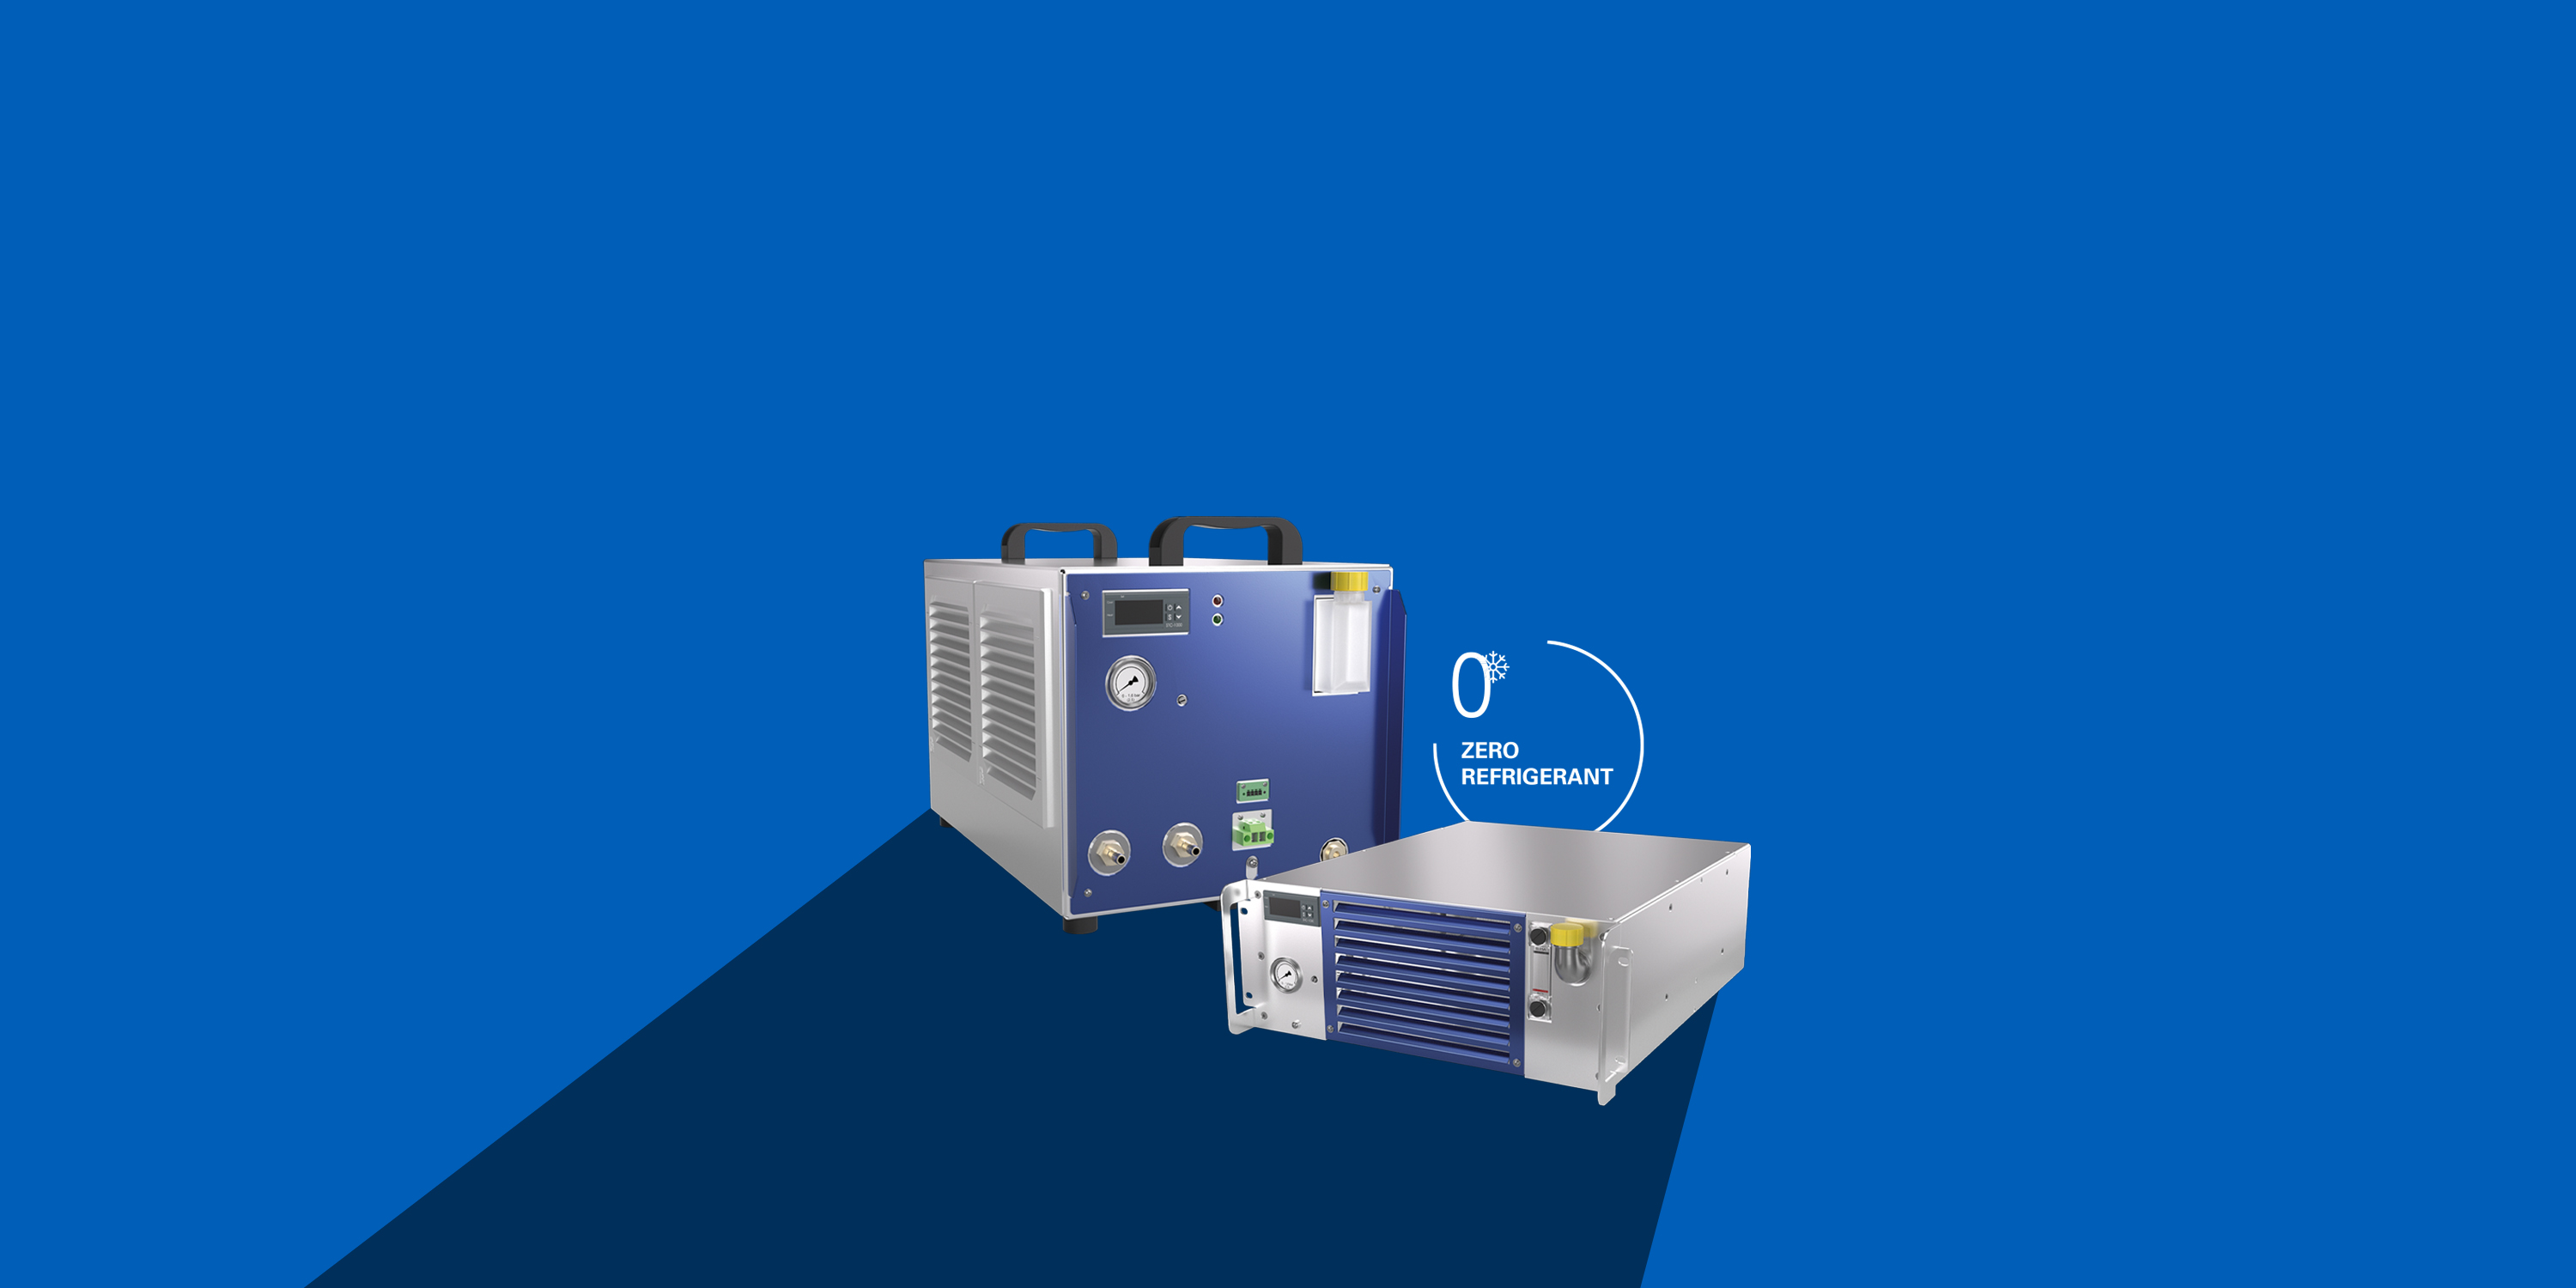 Kältemittelfreie Kühllösung mit Kälteleistungen bis 350 W für Medizin- und Laboranalysetechnik sowie komplexe Lasersysteme im kleinen Leistungsbereich